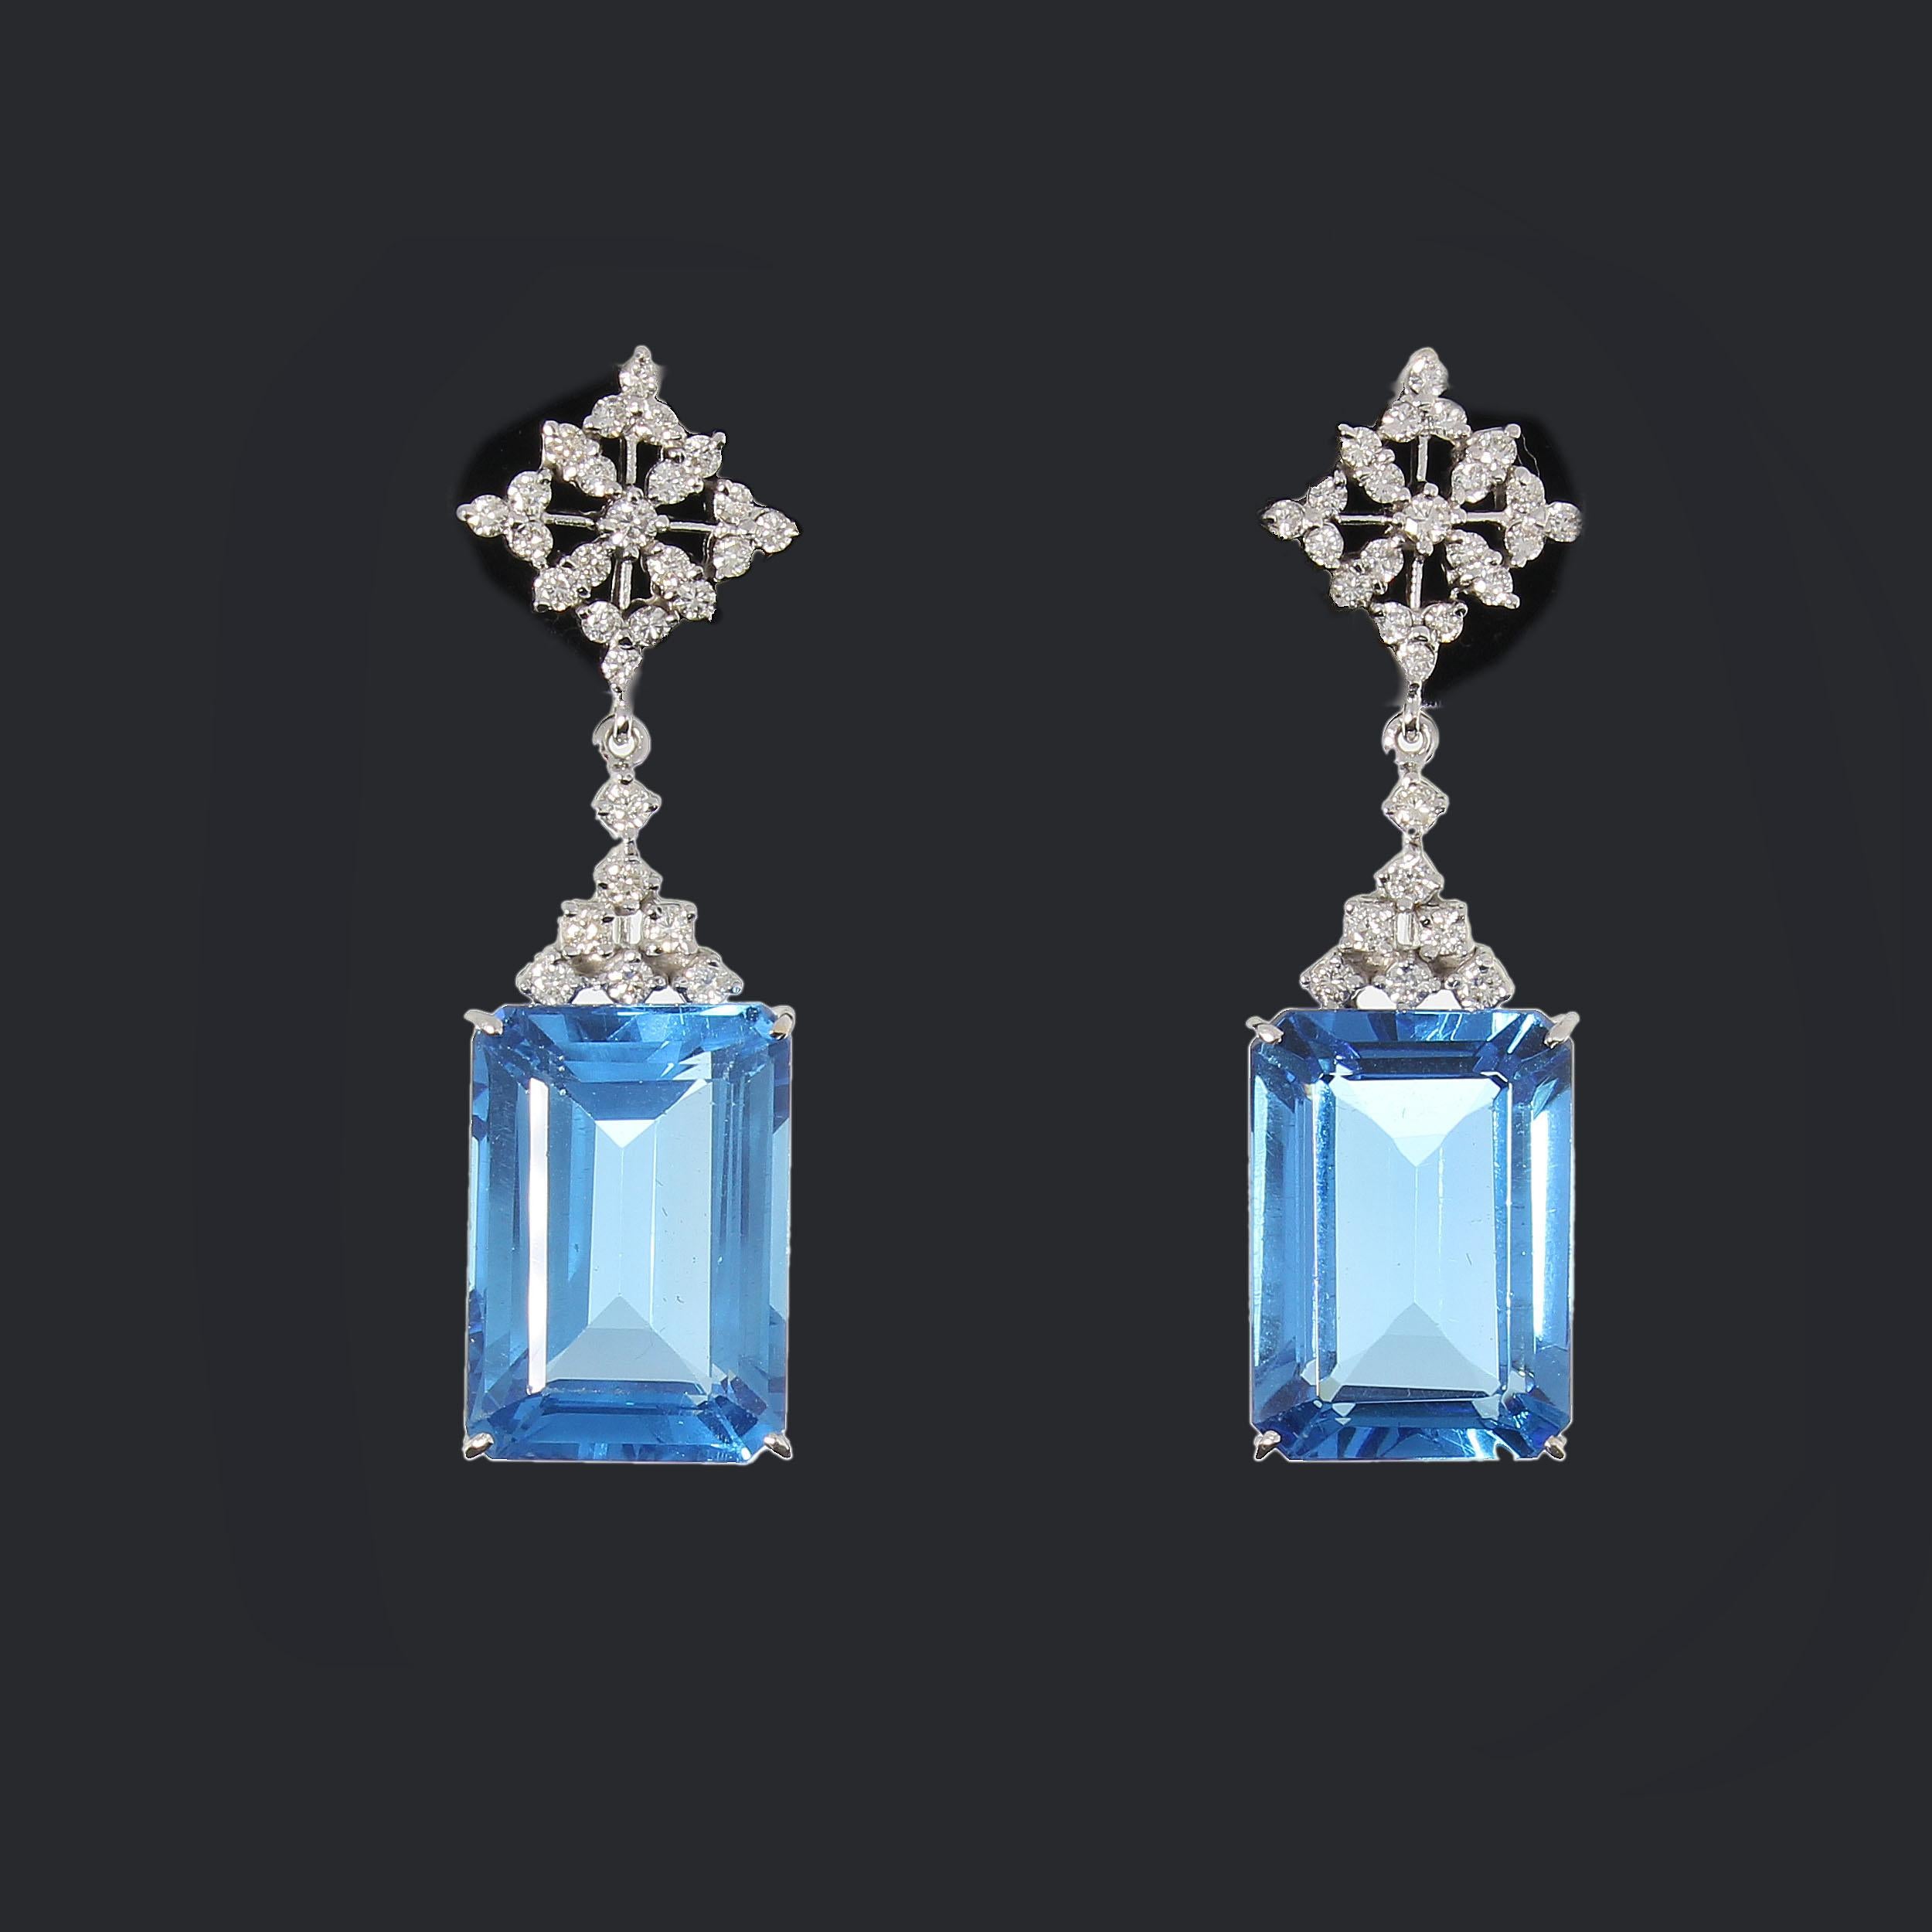 Europe vers 2000. Sertie de 2 topazes bleues taille émeraude pesant 69,0 ct. et 56 diamants taille brillant pesant 1,90 ct. Sertissage à griffes. Monté en or blanc 14 K. Poids total : 20,34 g. Longueur : 5 cm (1,97 in)